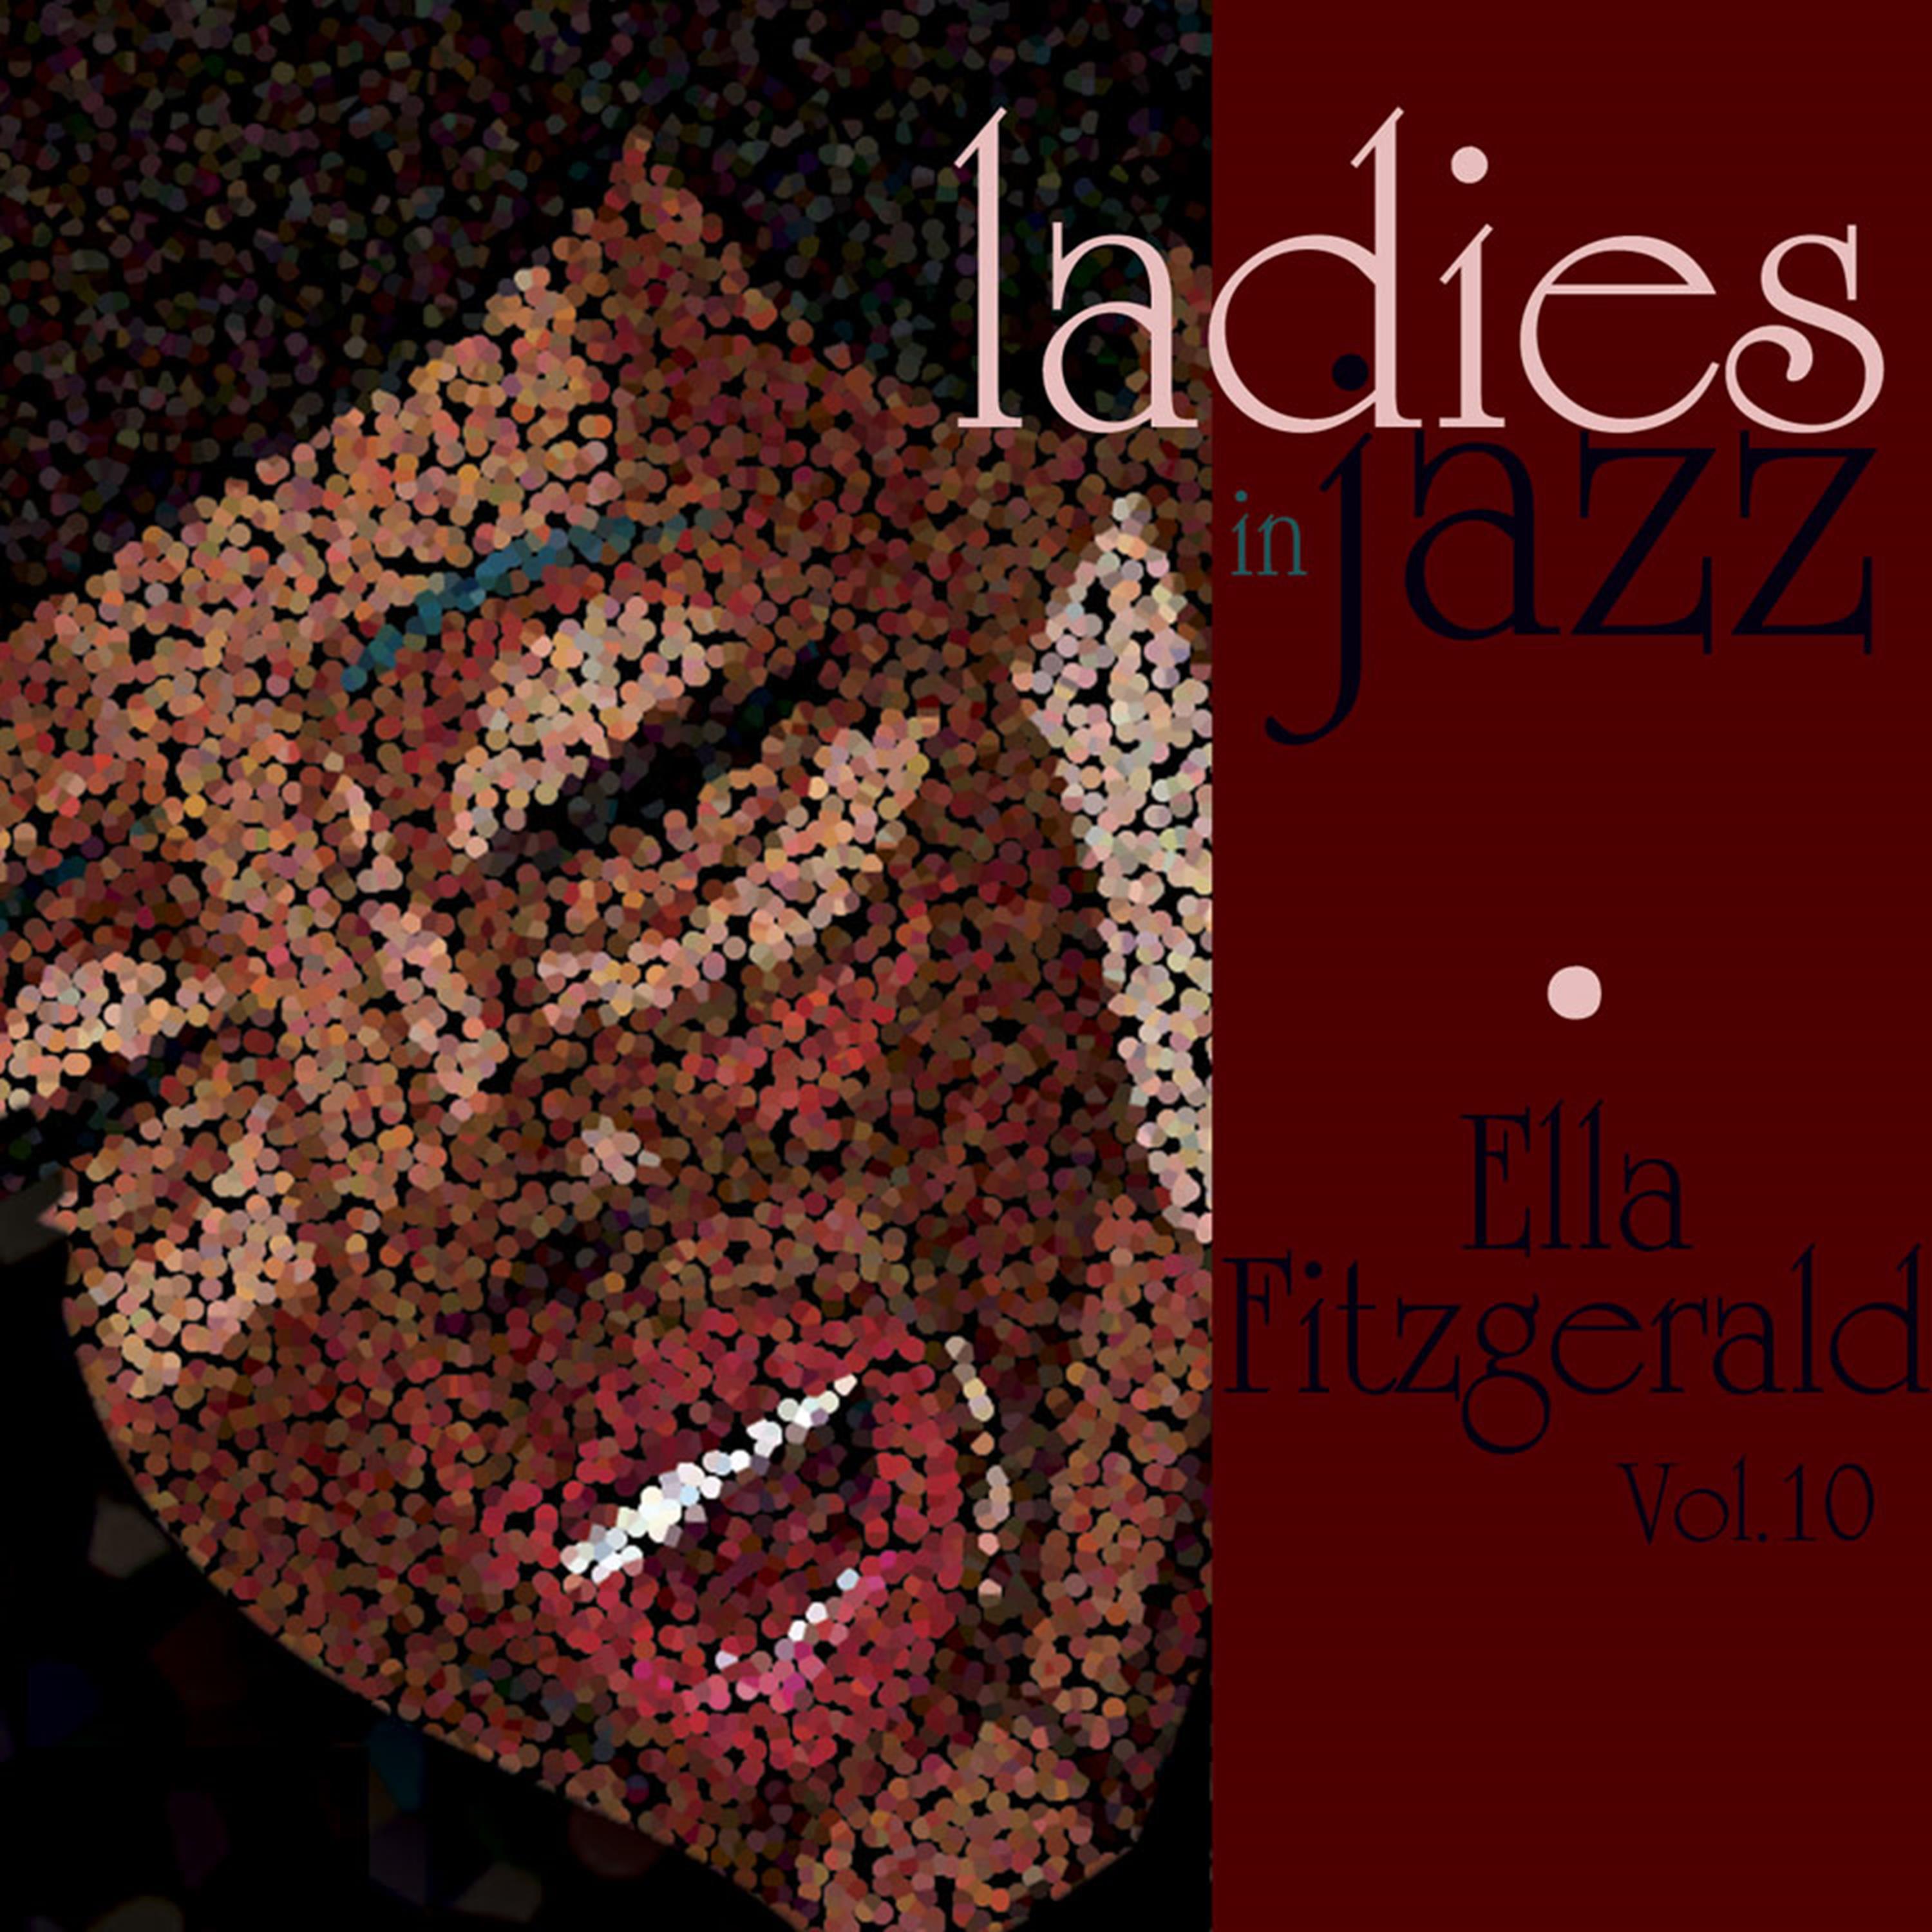 Ladies in Jazz - Ella Fitzgerald, Vol. 10